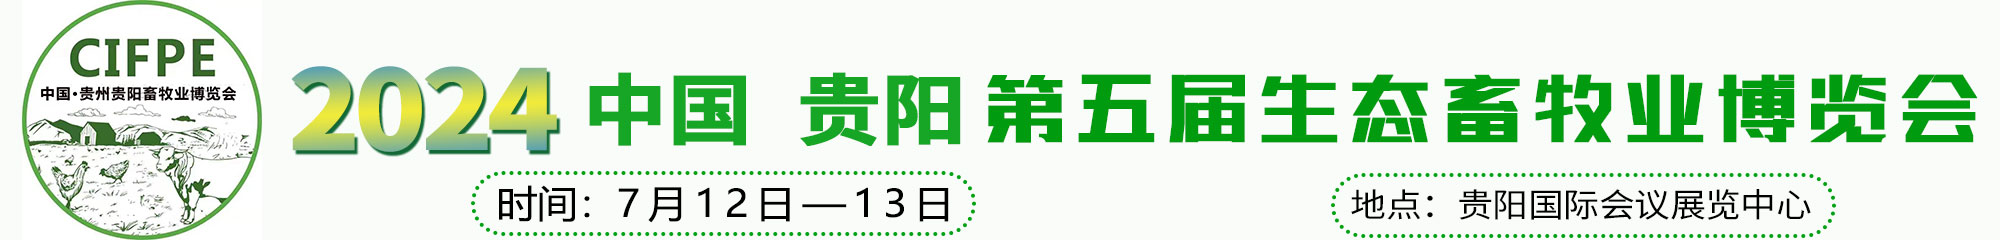 2024贵州第五届生态畜牧业博览会